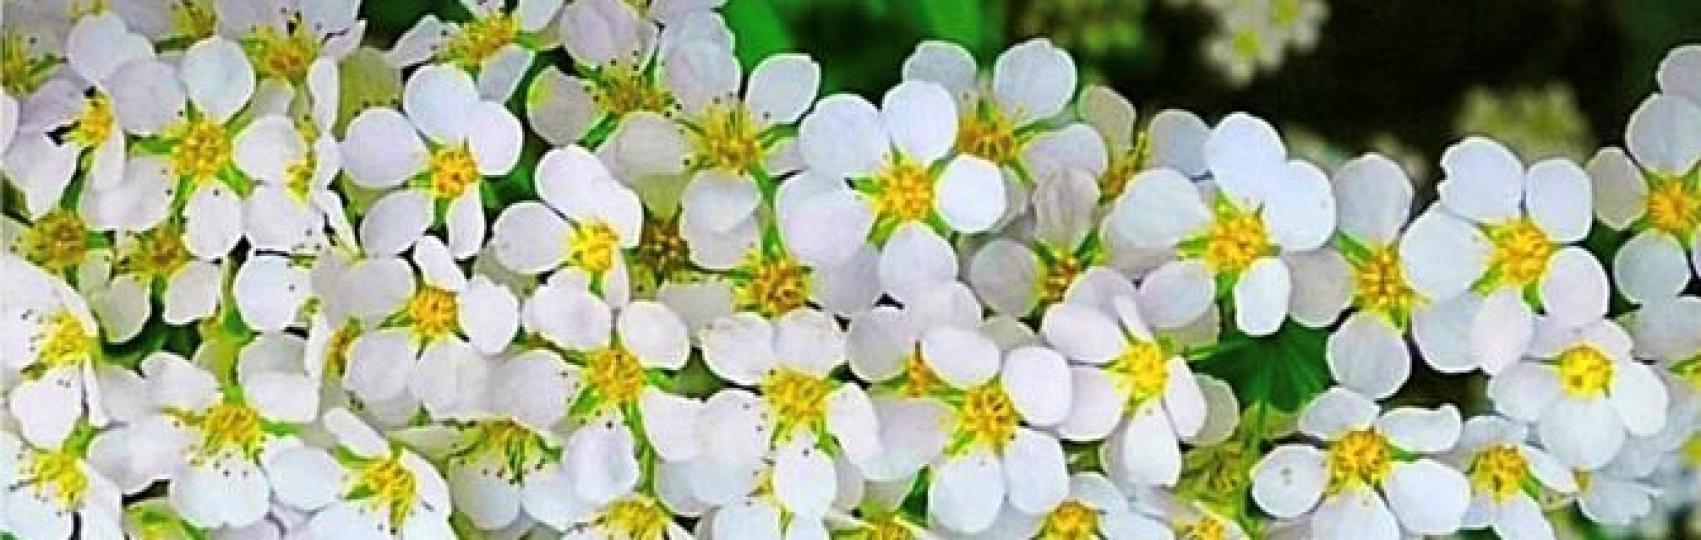 白花
看慣萬紫千紅的花朵，純潔的白花卻給人一種清雅優美的感覺。...